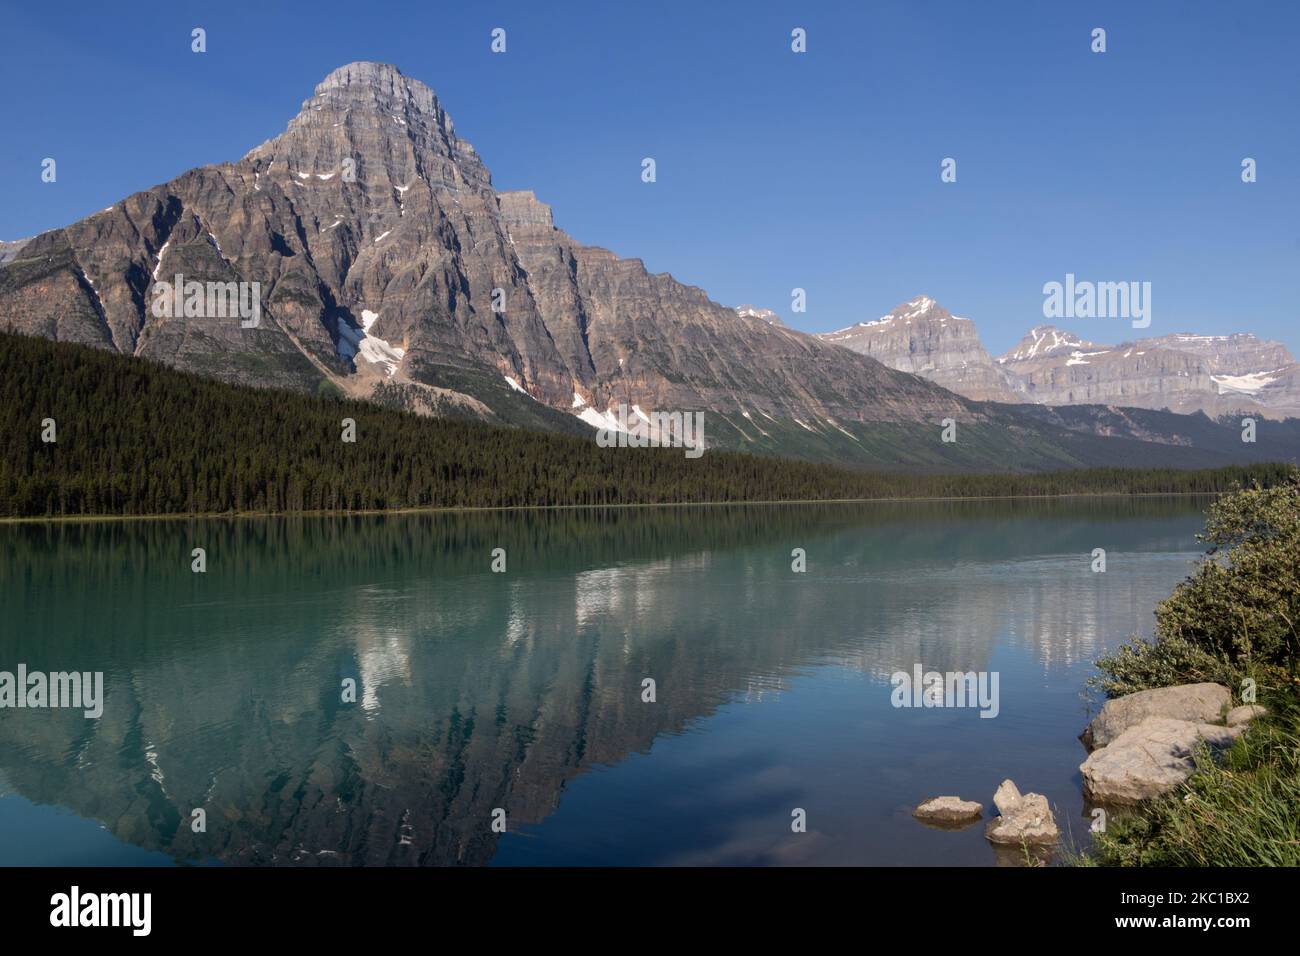 Howse Peak et Waterfowl Lake au soleil du matin dans le parc national Banff, Alberta Canada Banque D'Images